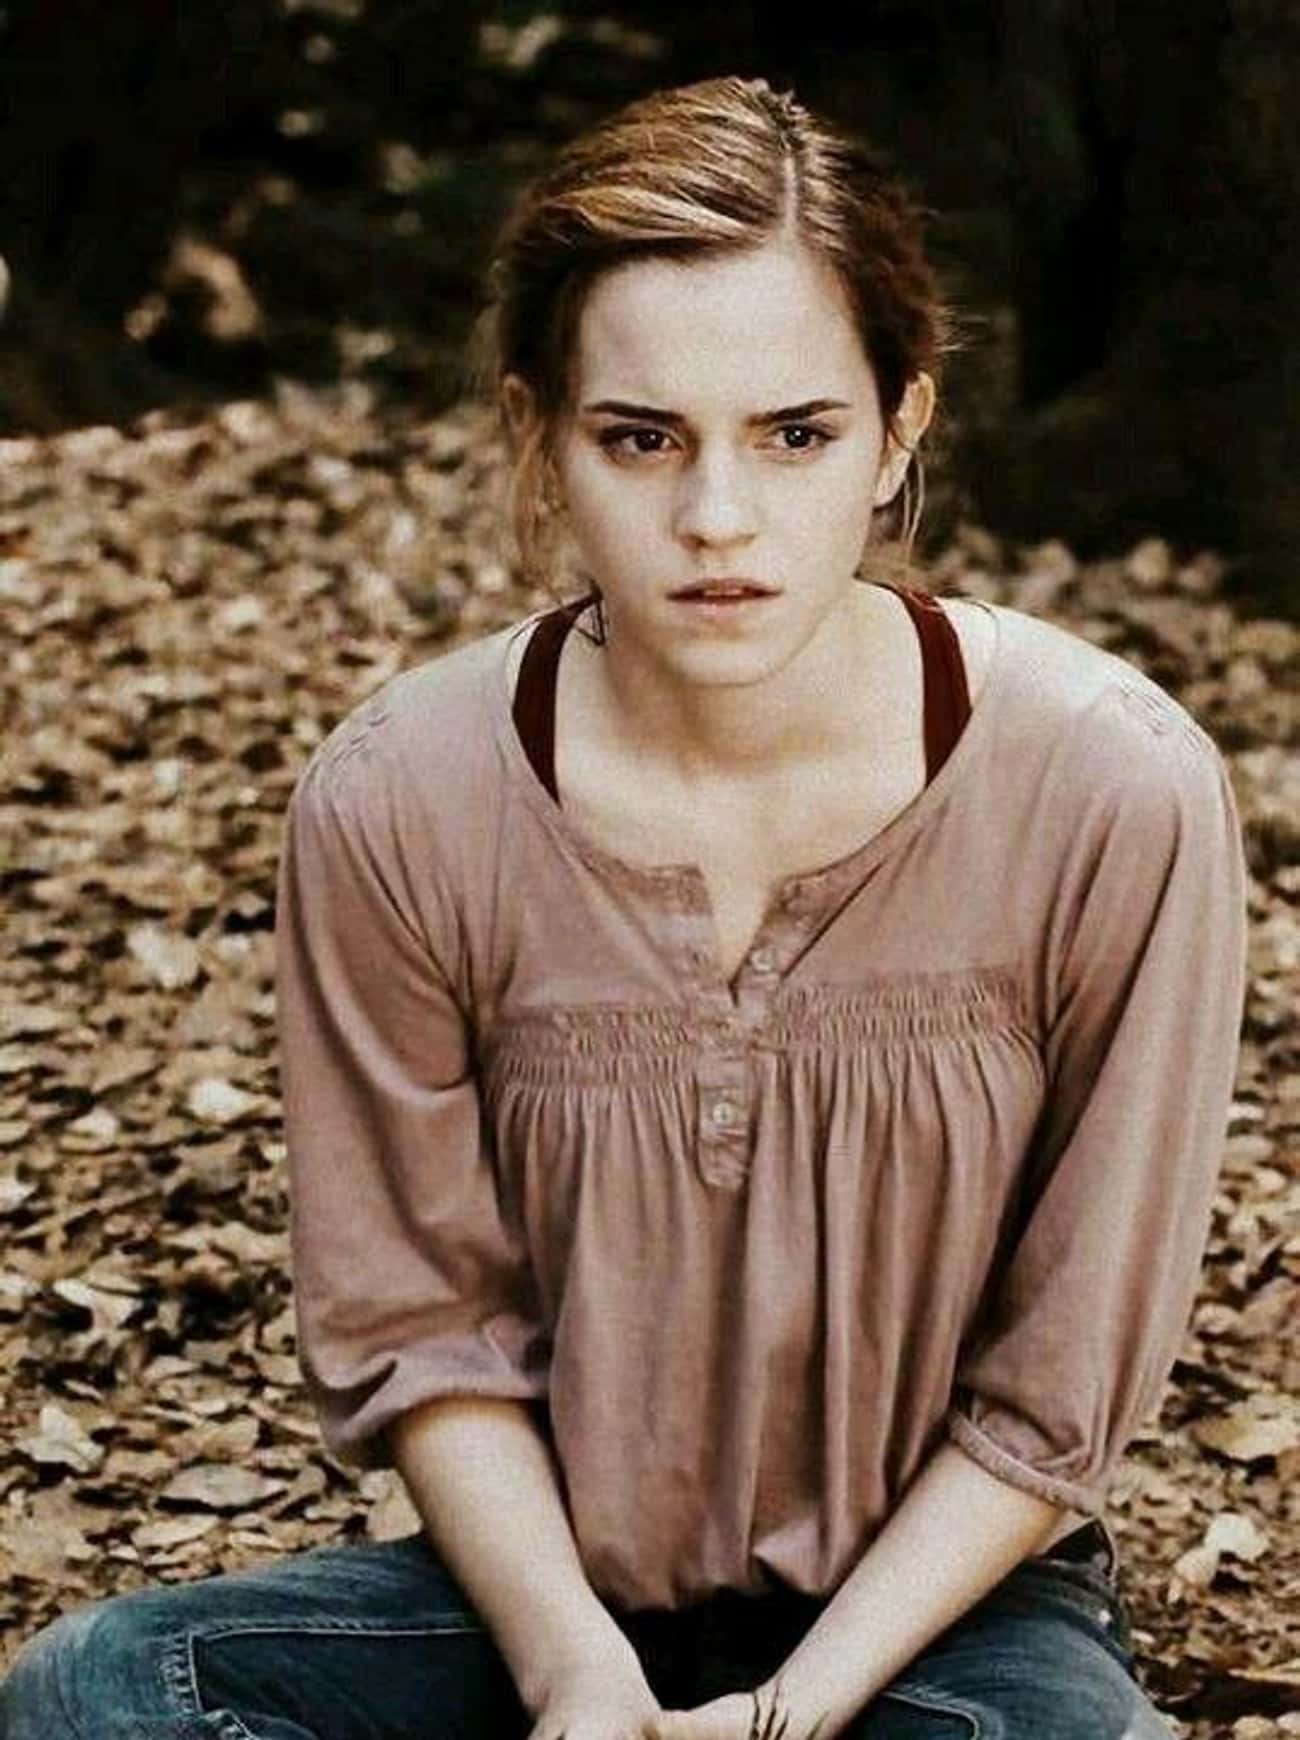 Hermione Was Secretly Ashamed Of Being A Muggleborn